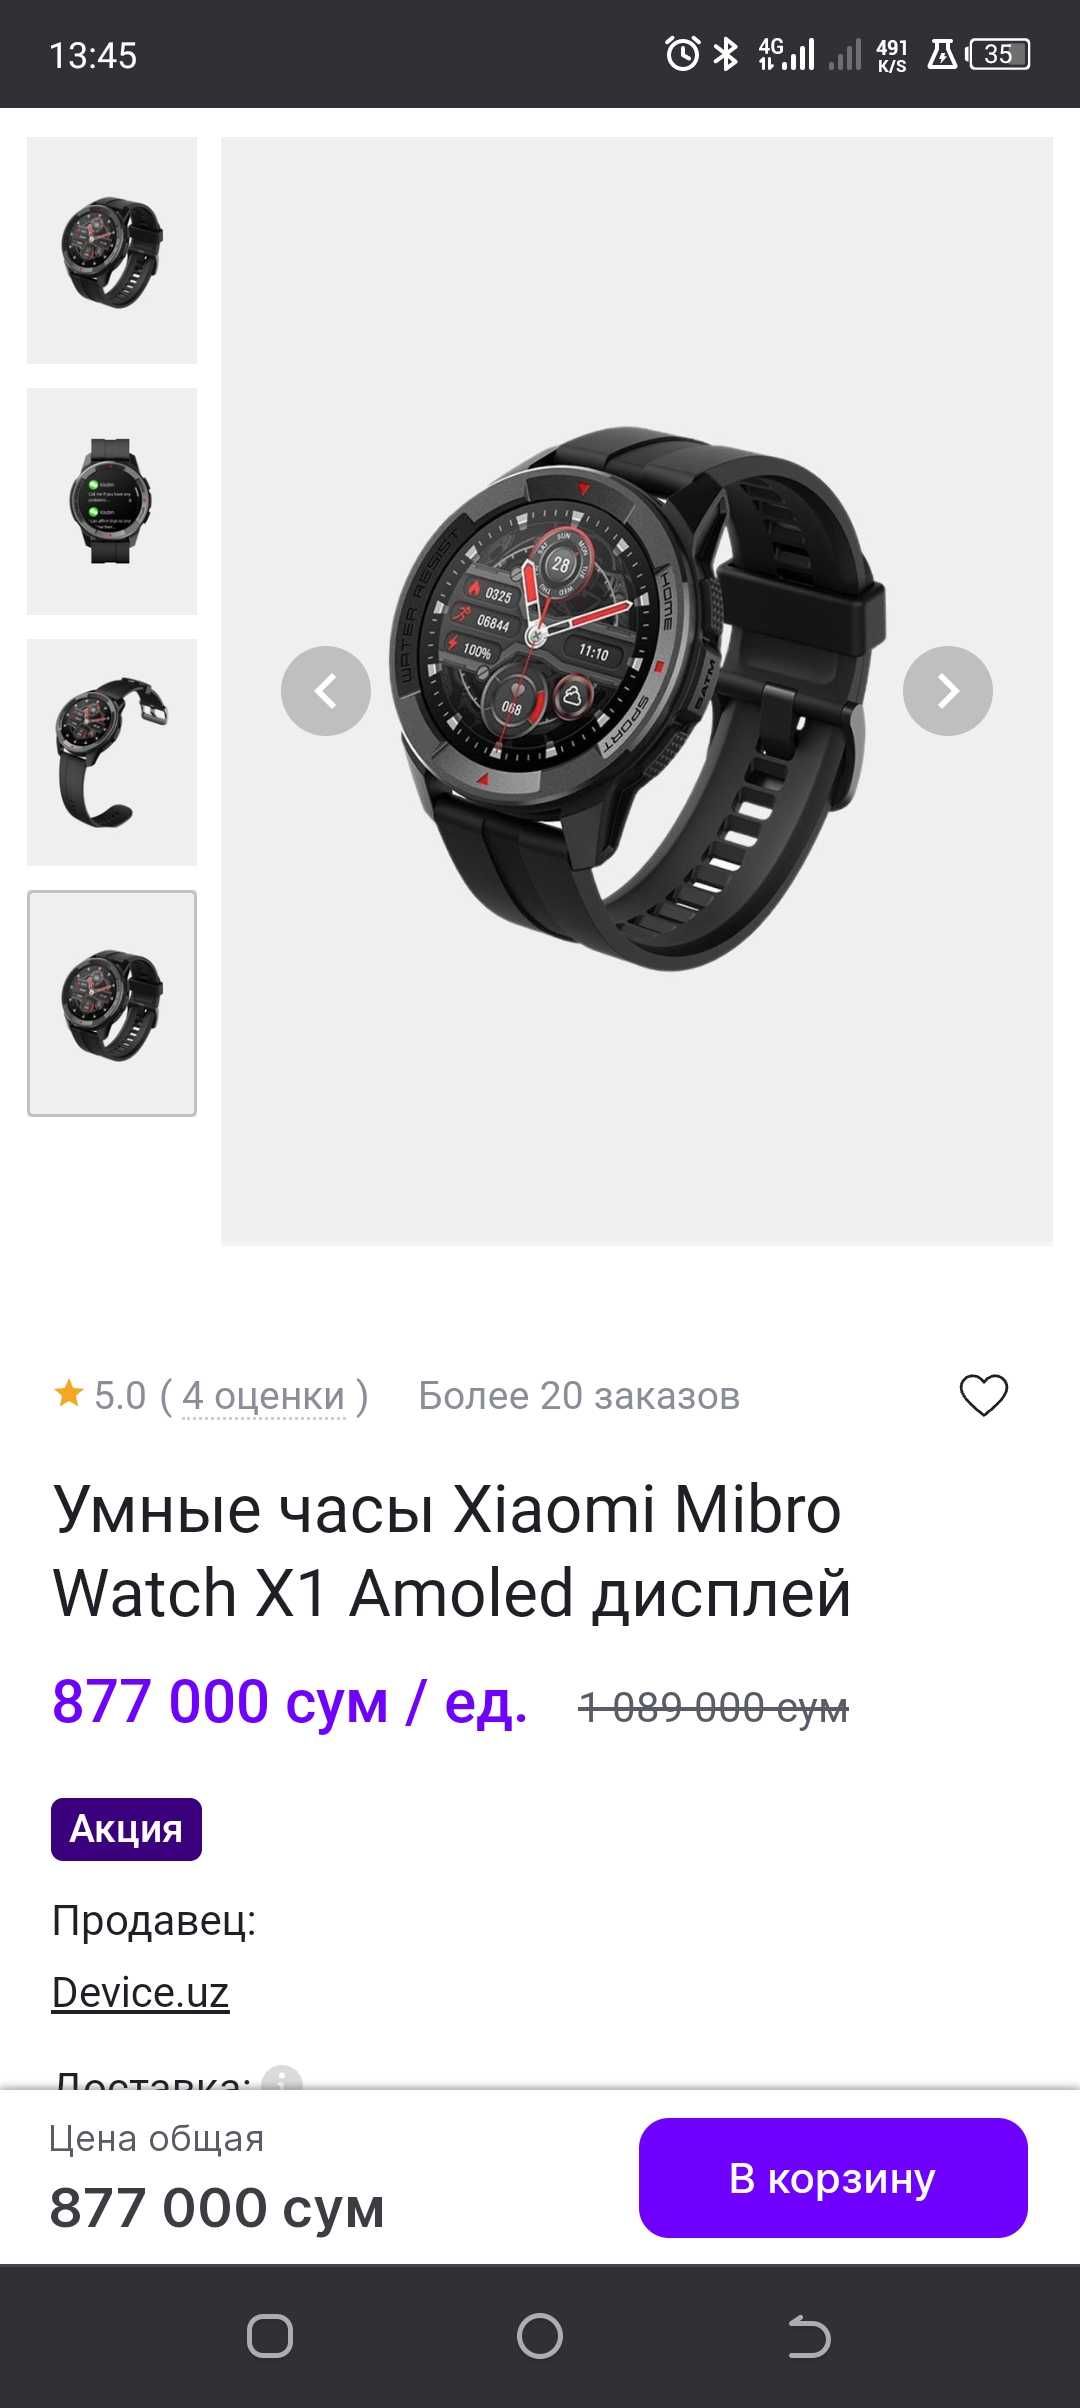 Xiaomi Mibro Watch x1